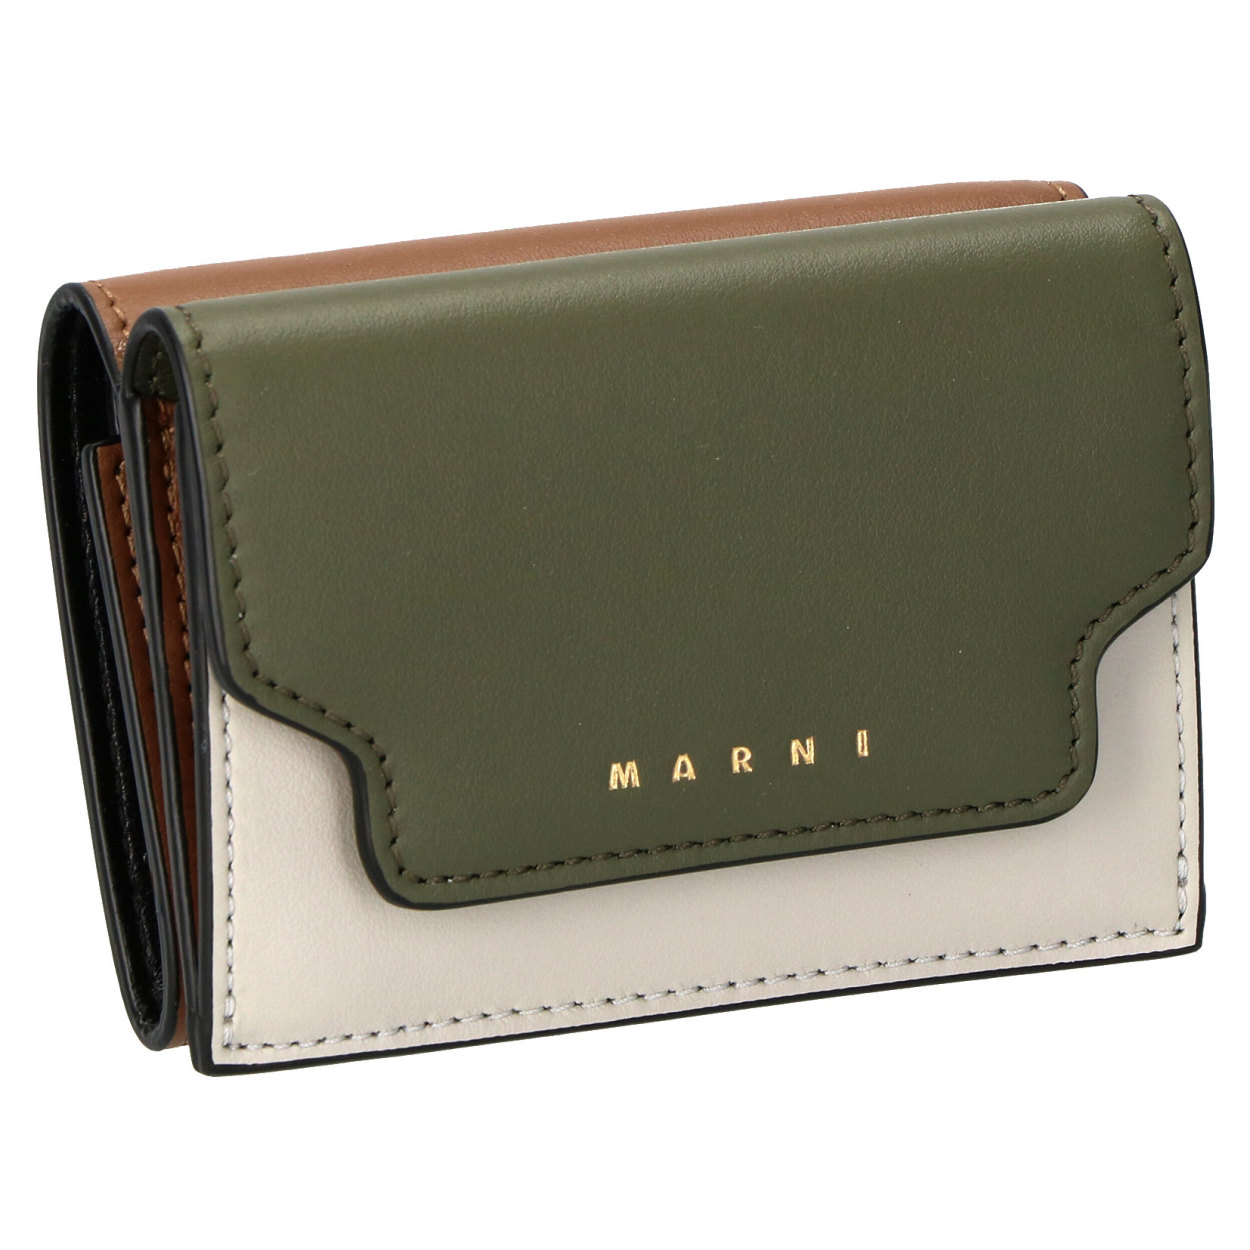 Marni マルニ カーフスキン 財布 バッグ 三つ折り コインケース ミニ財布-